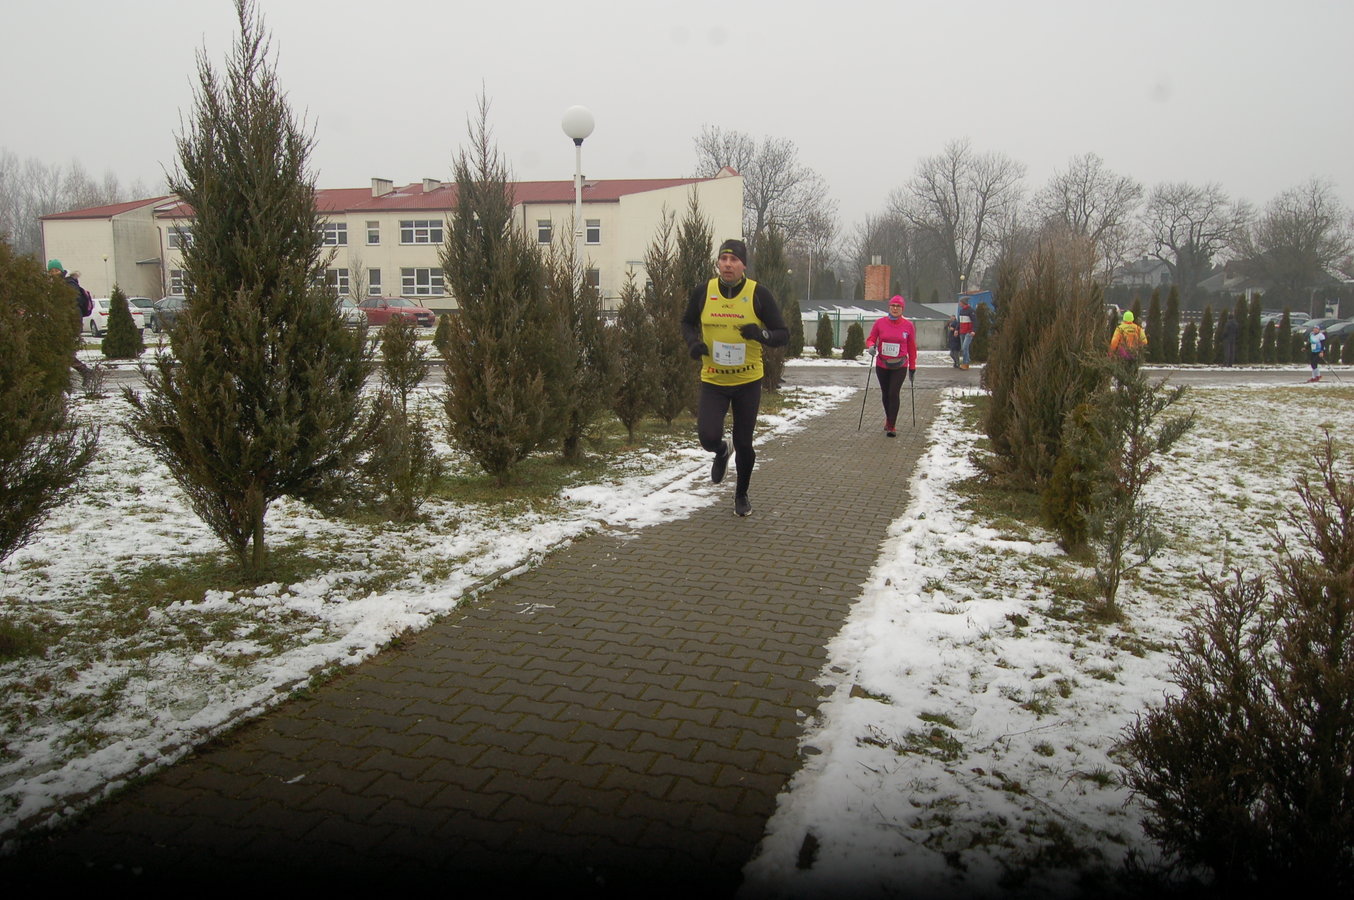 zawodnicy na trasie biegu i marszu , trawa jest pokryta cienka warstwą śniegu, chodnik jest czarny